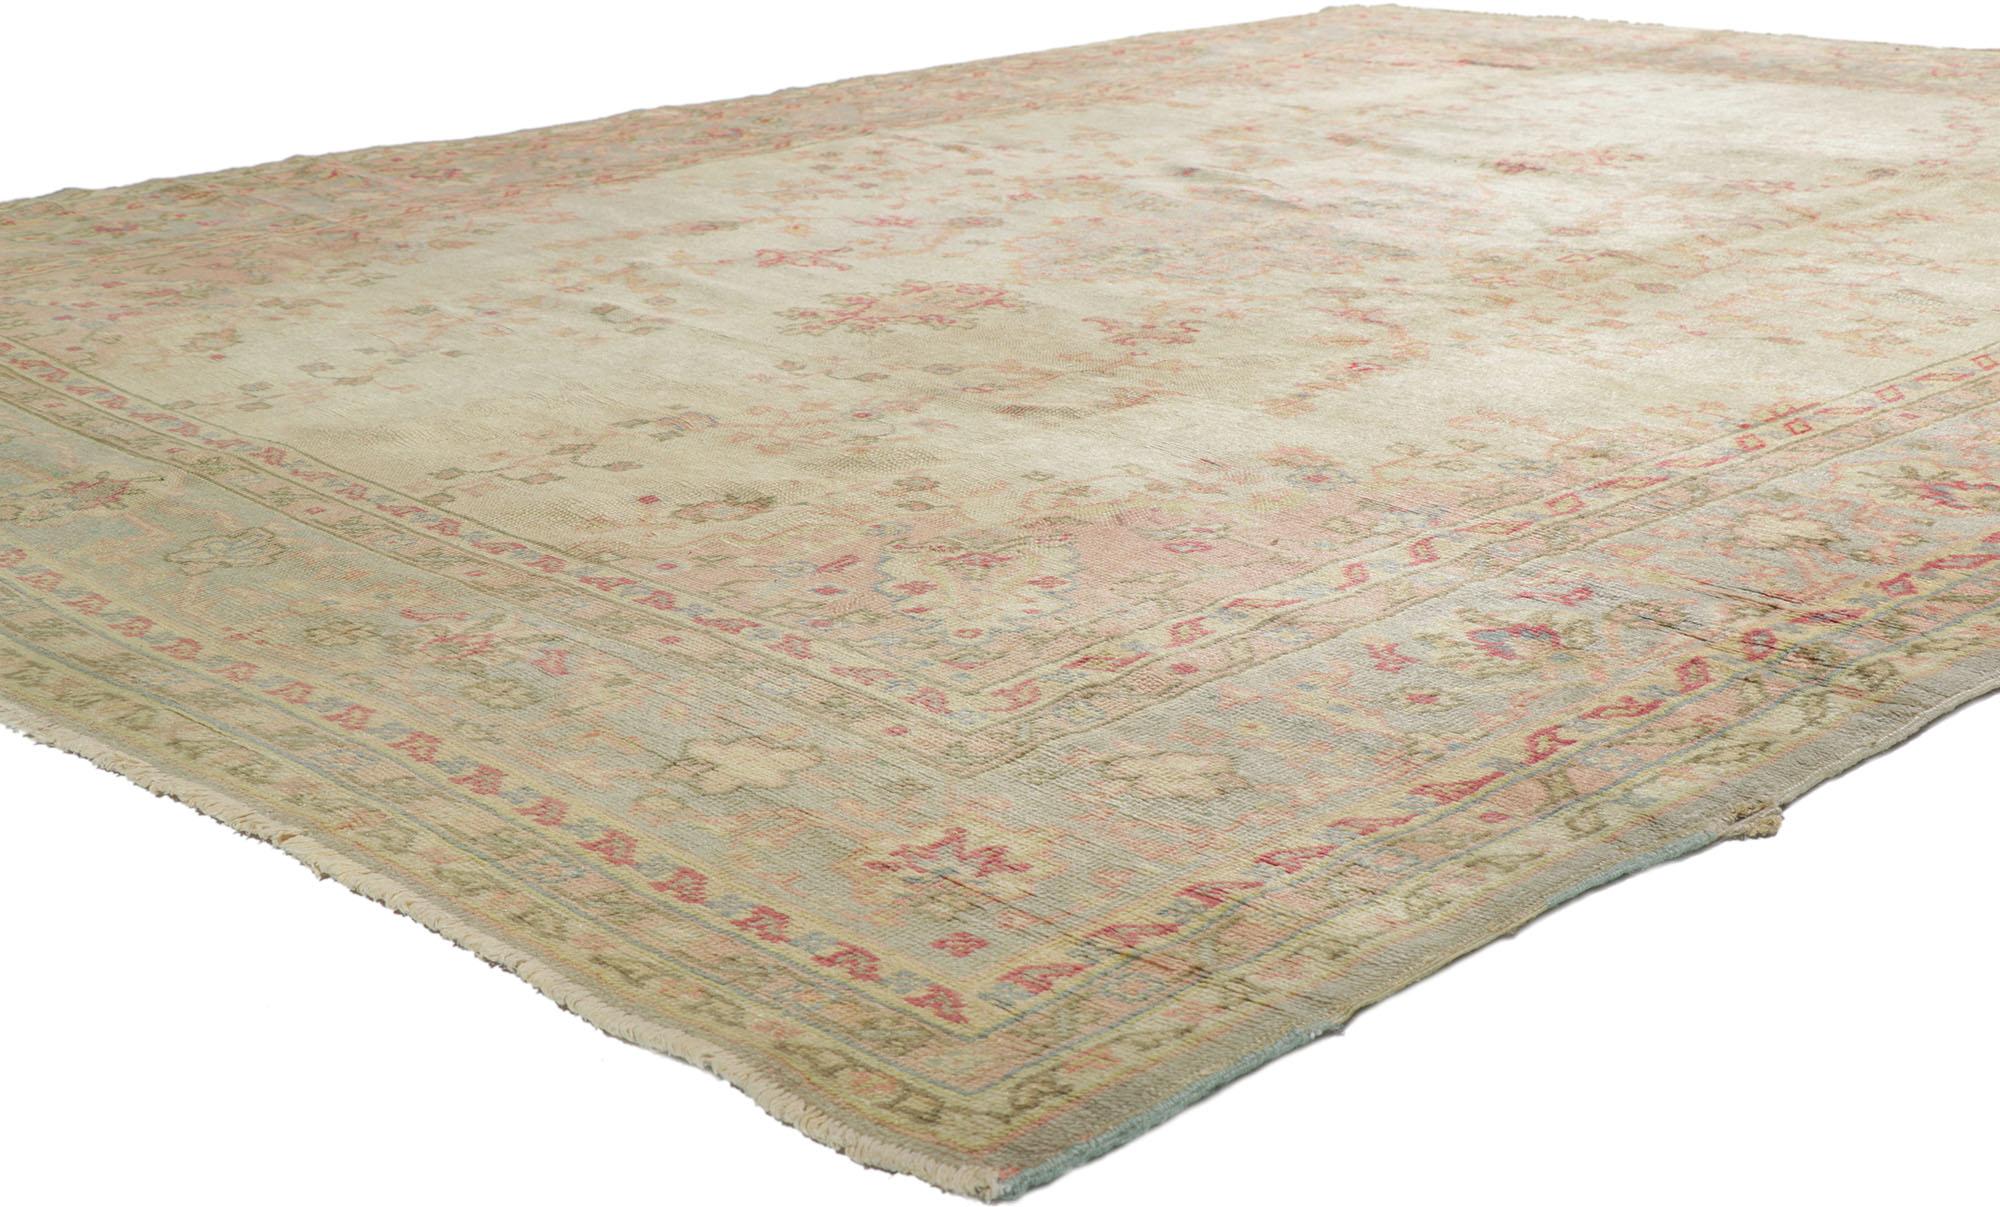 71741 tapis turc antique Oushak de style rustique géorgien. Avec ses couleurs pastel chaudes et ses éléments architecturaux de formes naturalistes à l'esthétique amoureusement usée par le temps, ce tapis Oushak turc antique en laine noué à la main